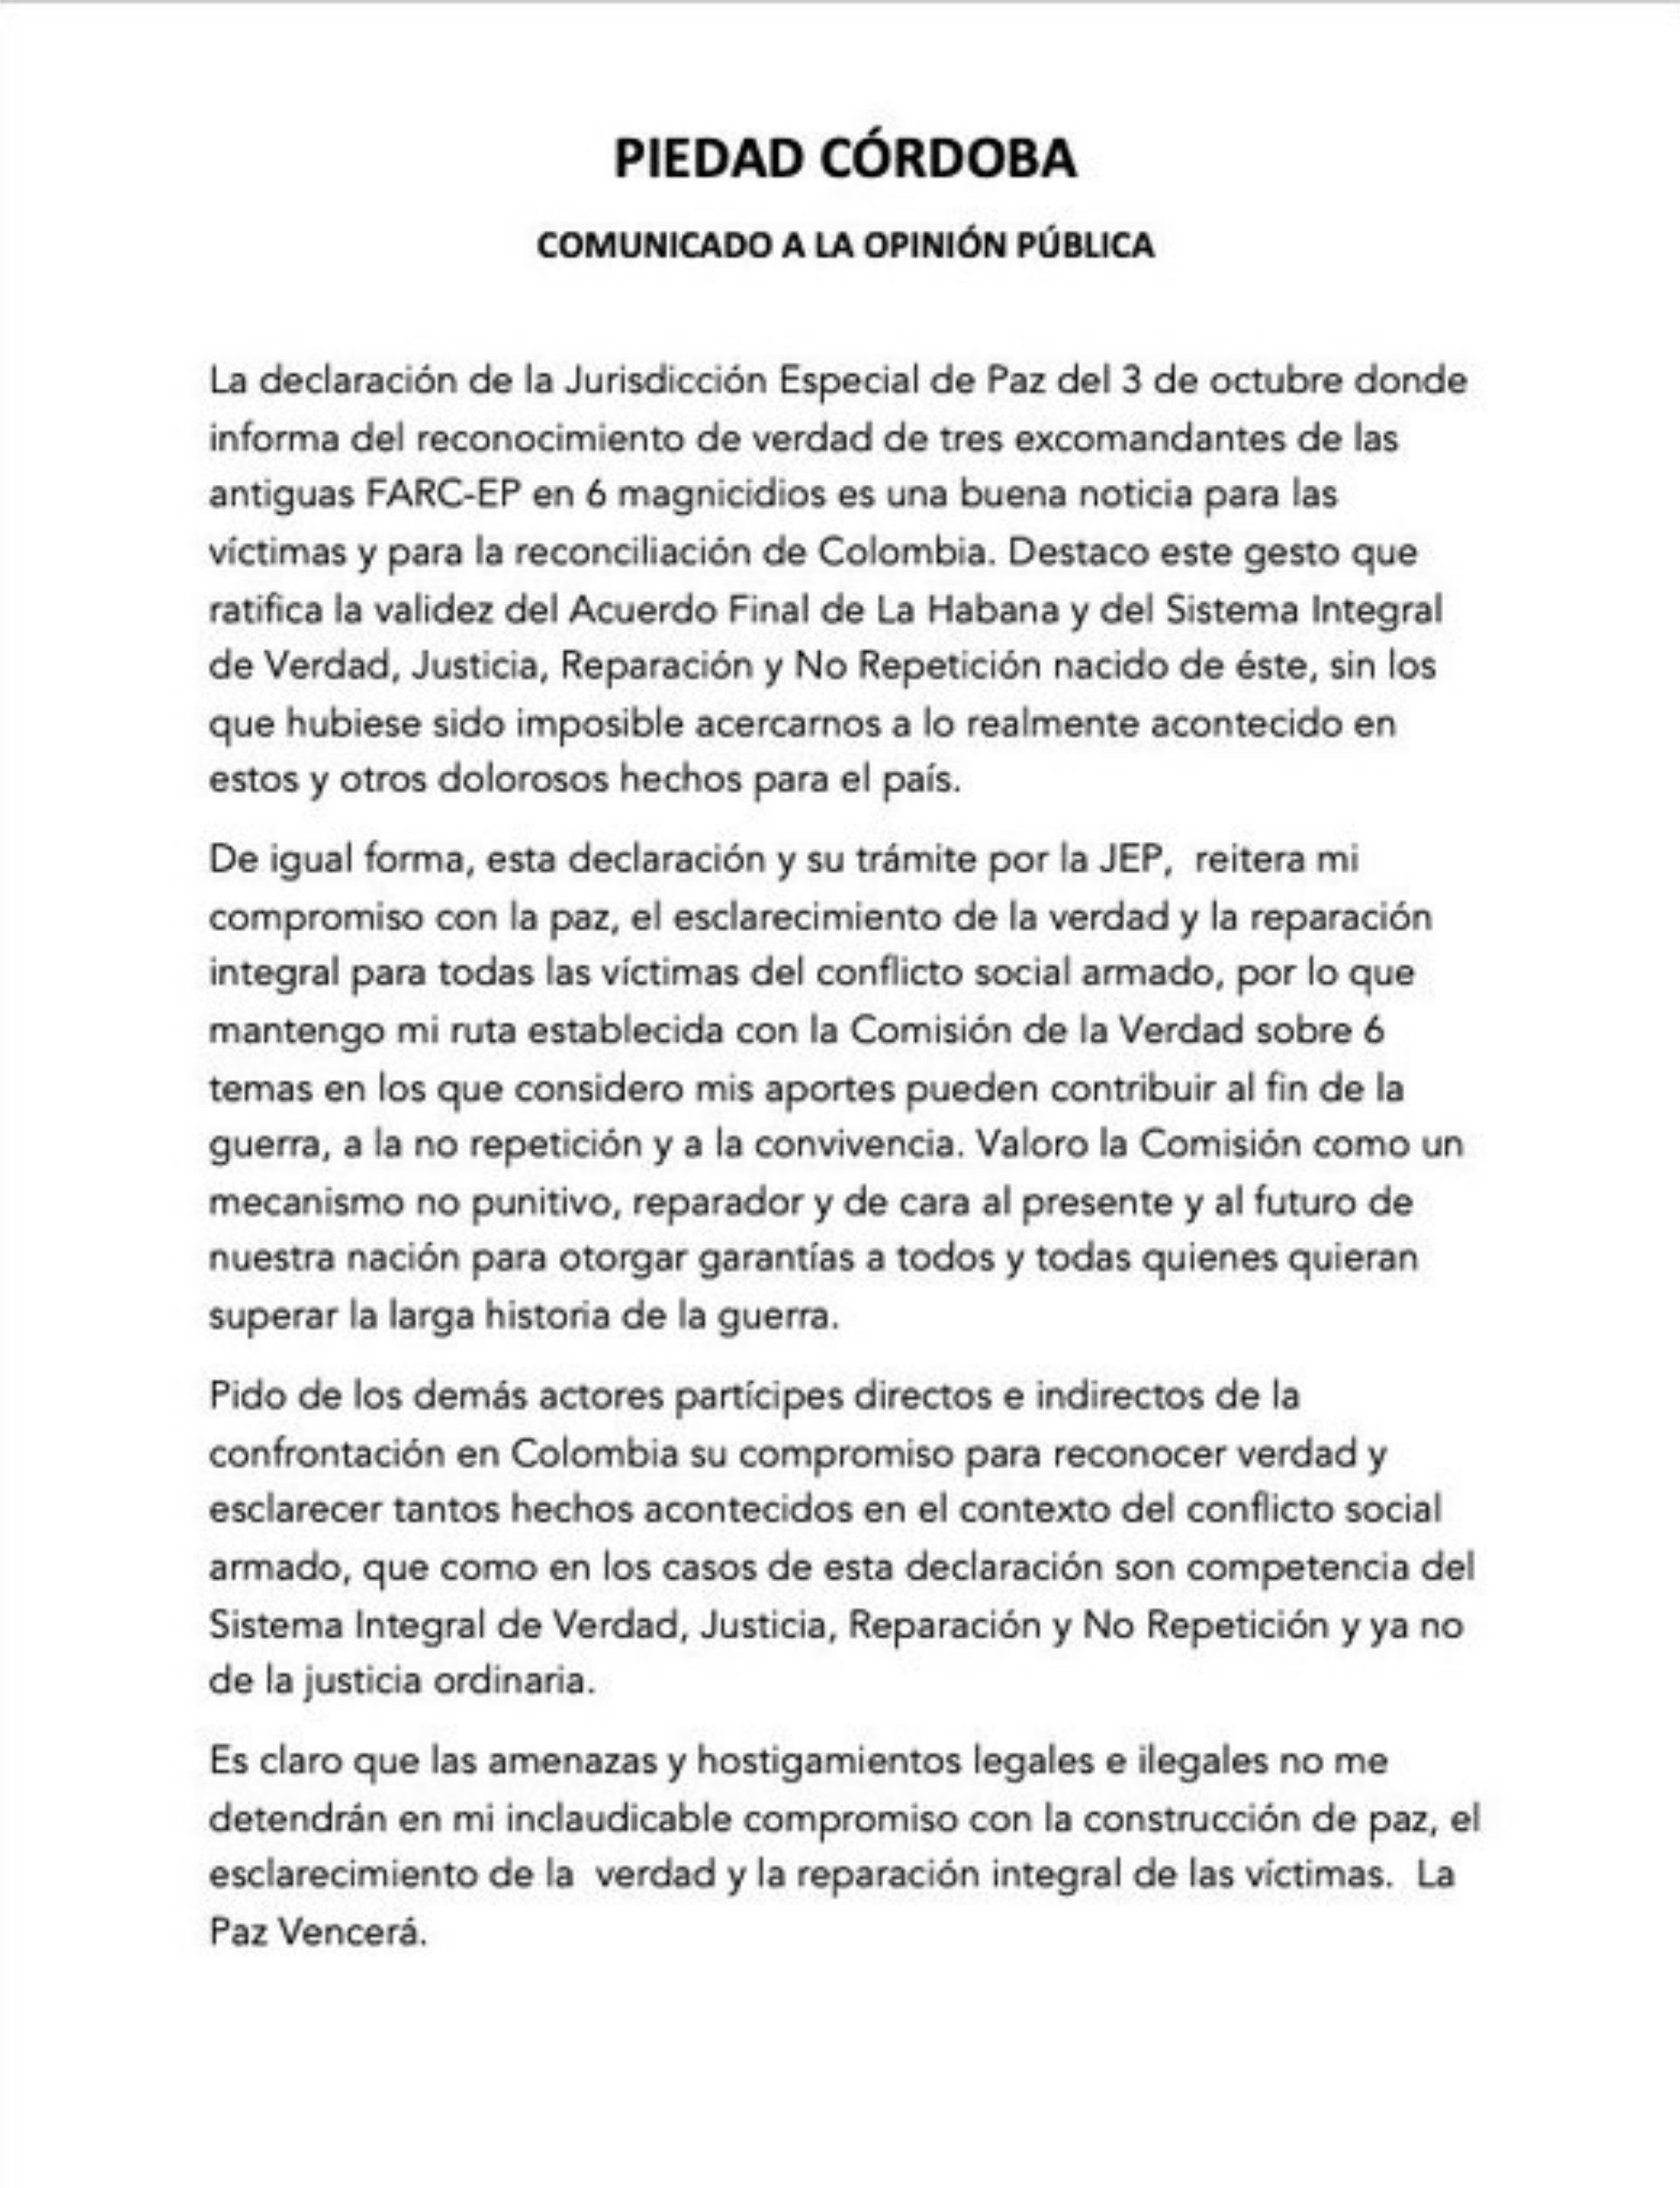 Comunicado publicado por la ex senadora Piedad Córdoba a través de su cuenta de twitter, este 4 de octubre.